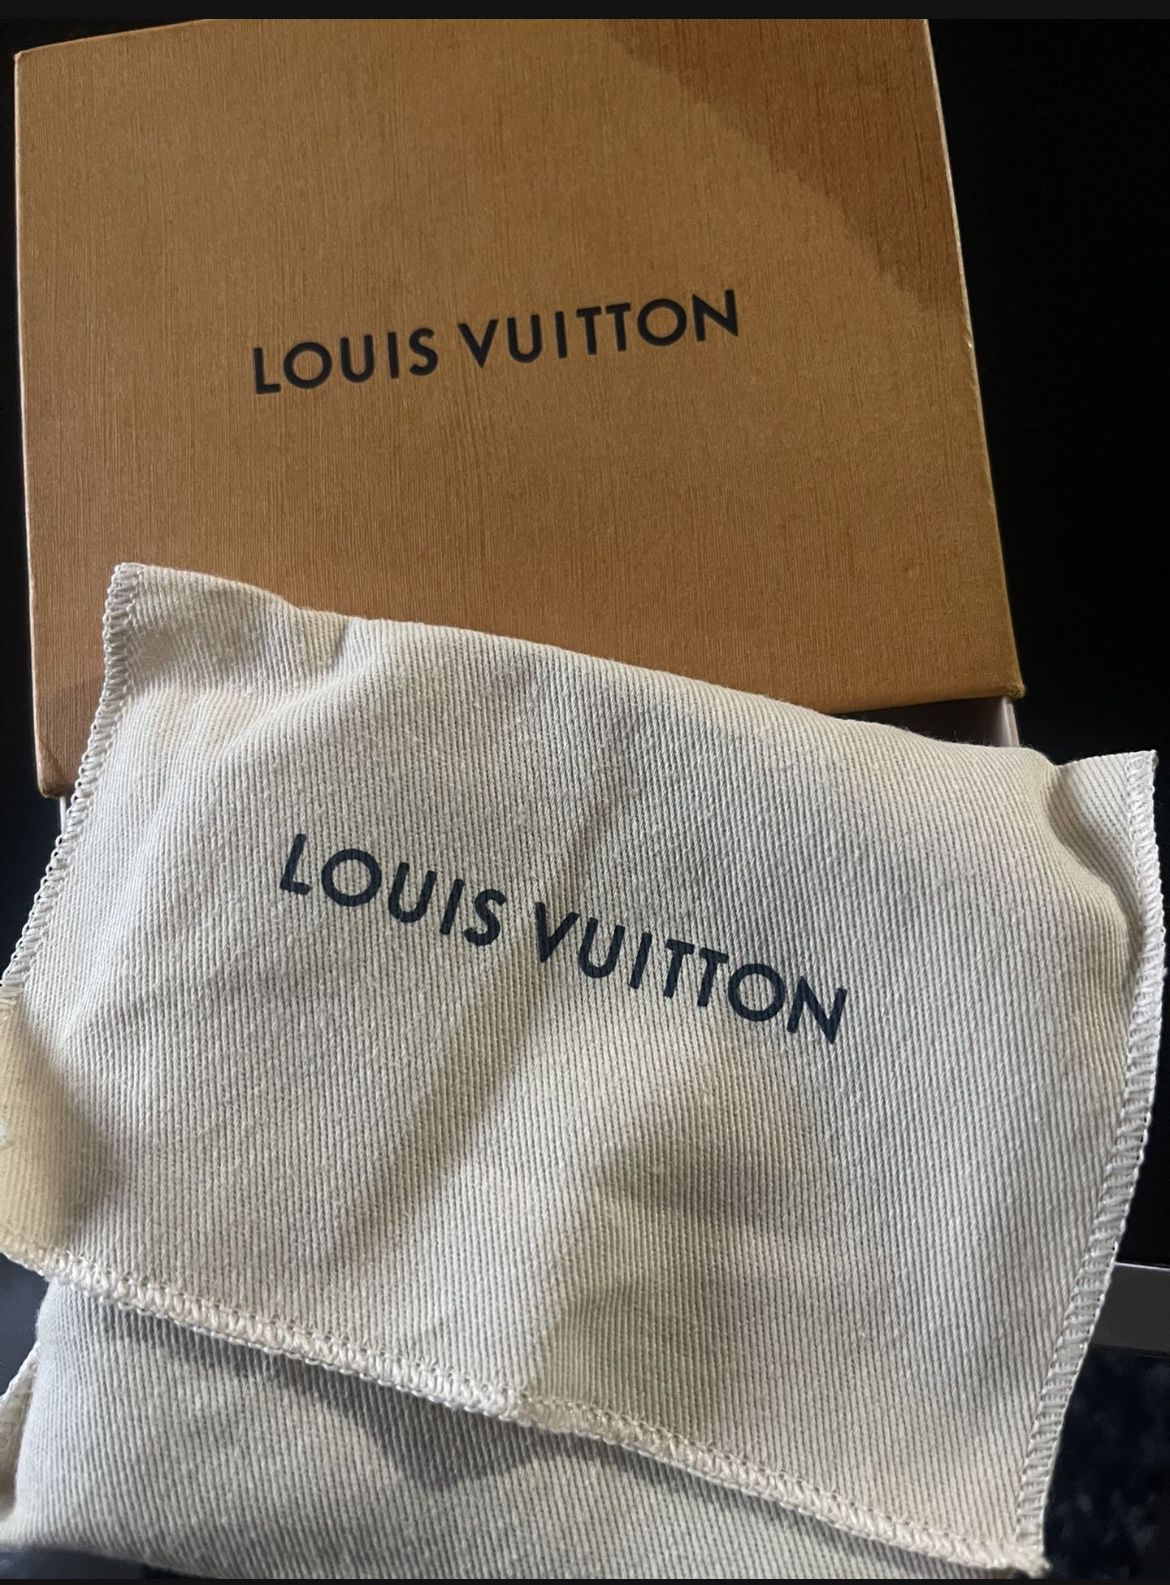 Mens Louis Vuitton Wallet For Sale. Authentic. Have Receipt for Sale in  Hampton, VA - OfferUp